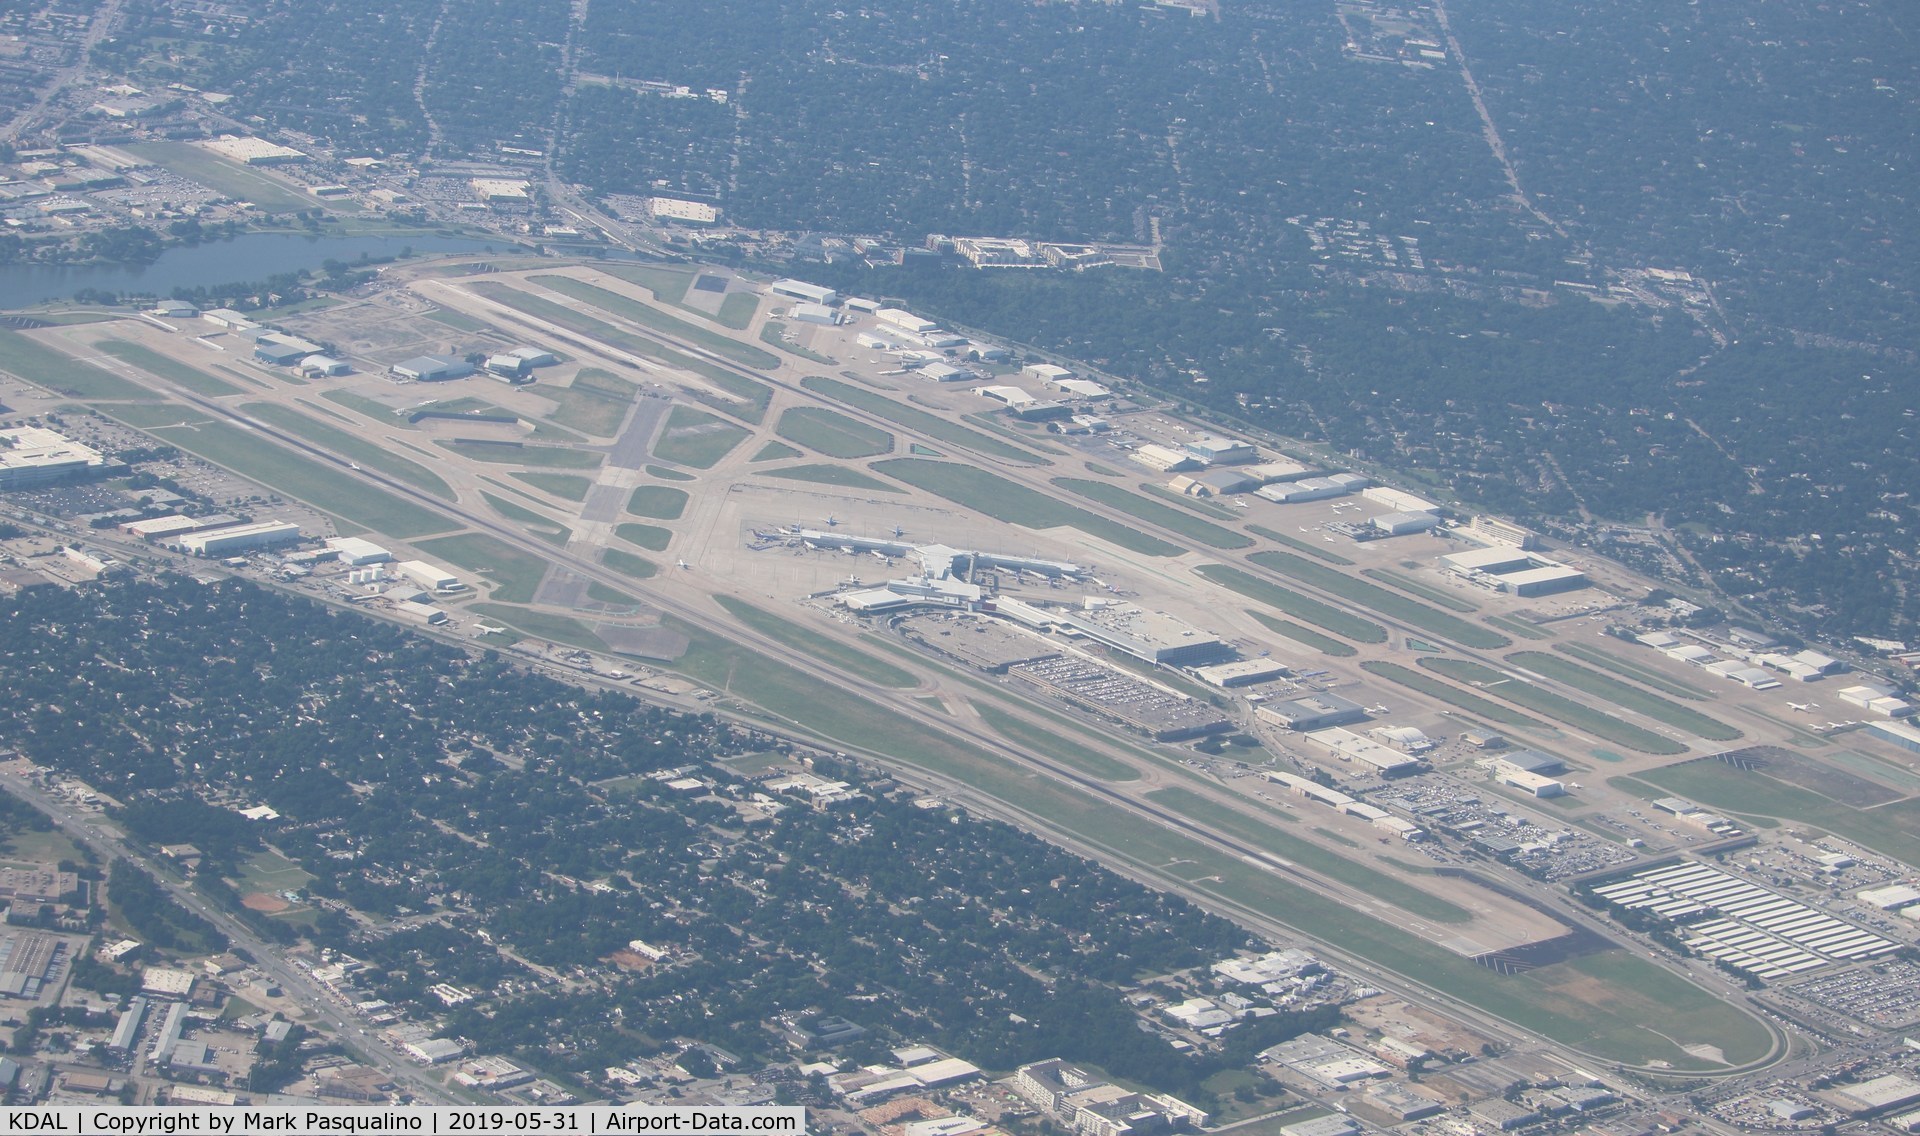 Dallas Love Field Airport (DAL) - Dallas Love Field